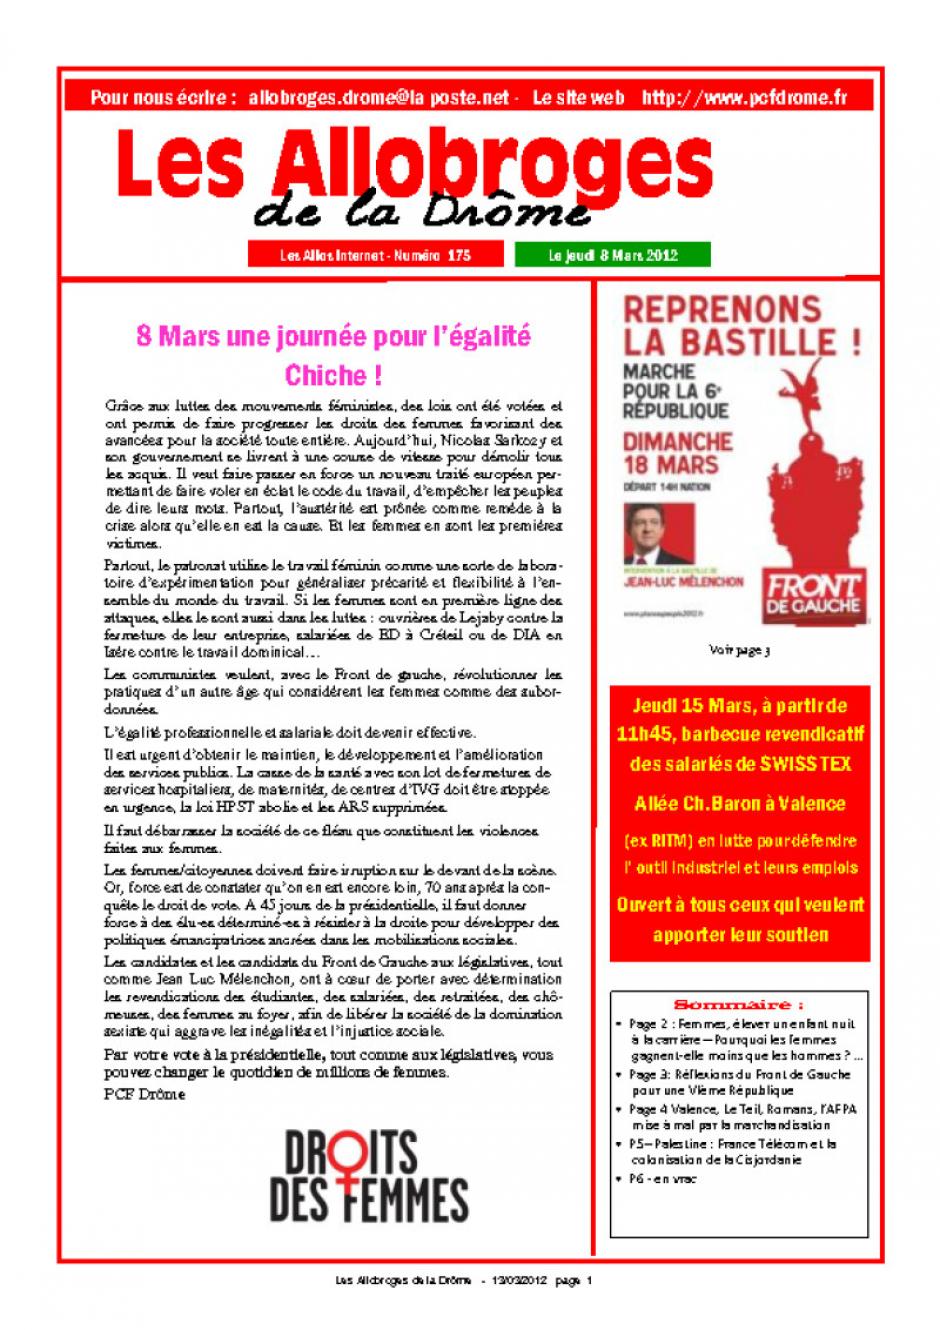 Les allobroges de la Drôme - n° 175 du 8 mars 2012